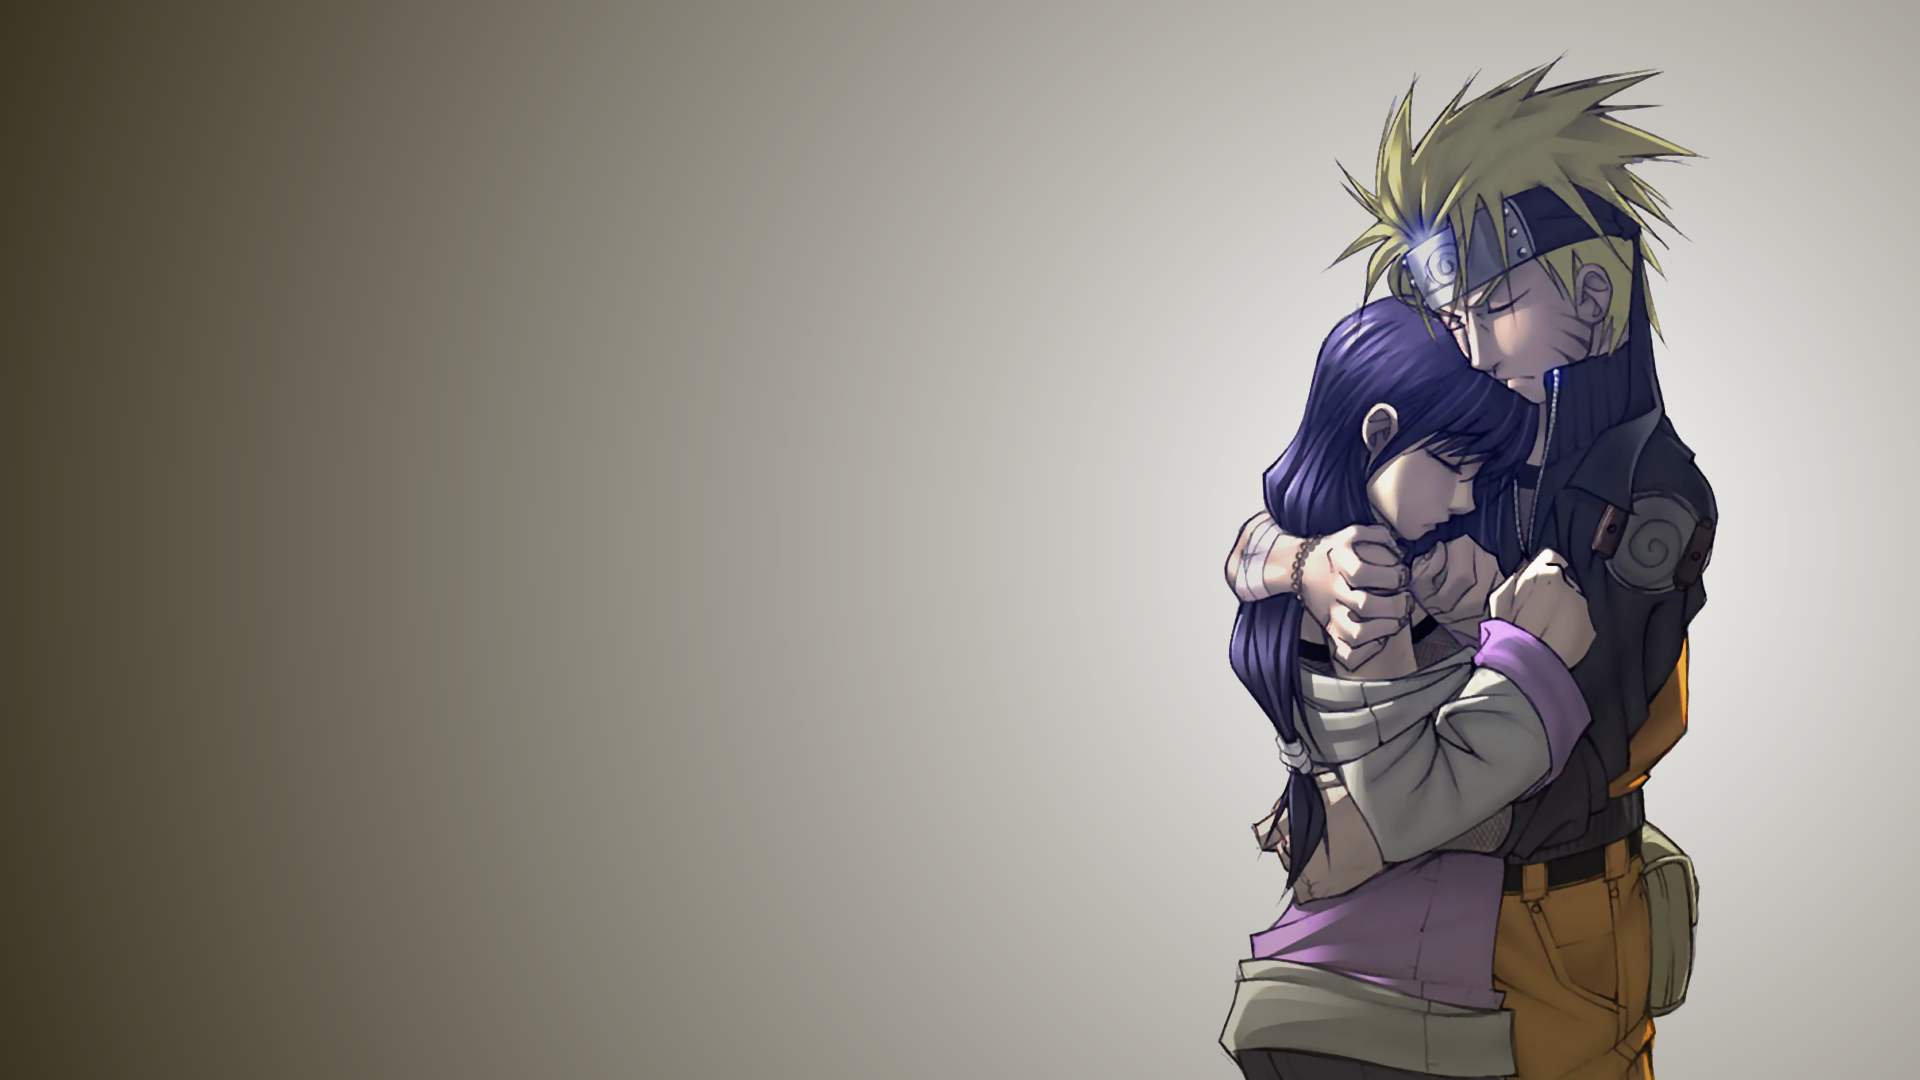 Naruto và Hinata - một cặp đôi trong mơ của các fan đã trở lại với hình nền tuyệt đẹp này. Hãy chia sẻ tình yêu của bạn với cặp đôi này trong lòng cộng đồng Naruto!